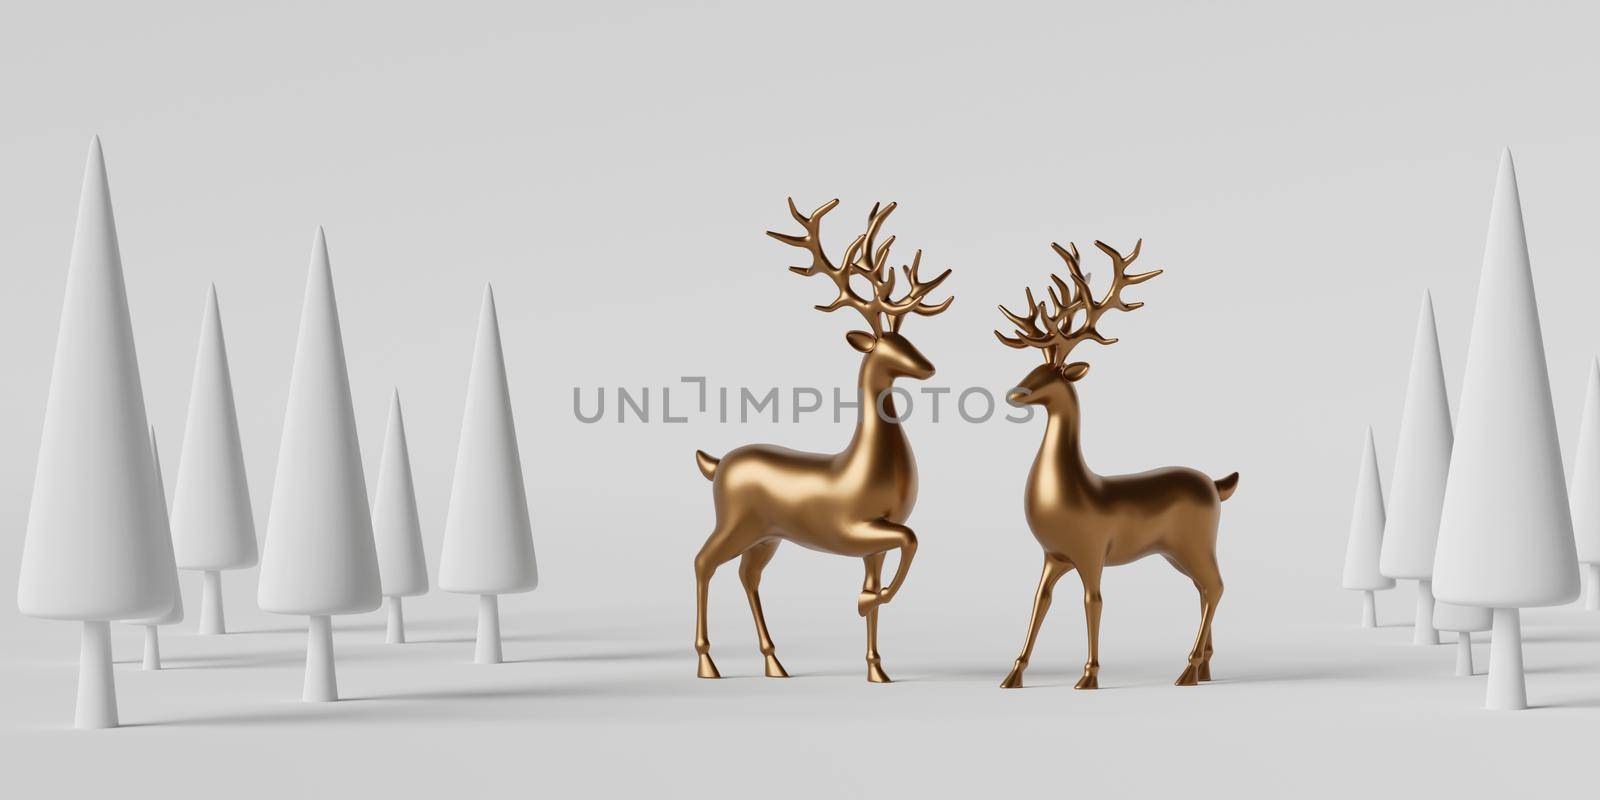 3d illustration banner of reindeer in pine forest on white background by nutzchotwarut